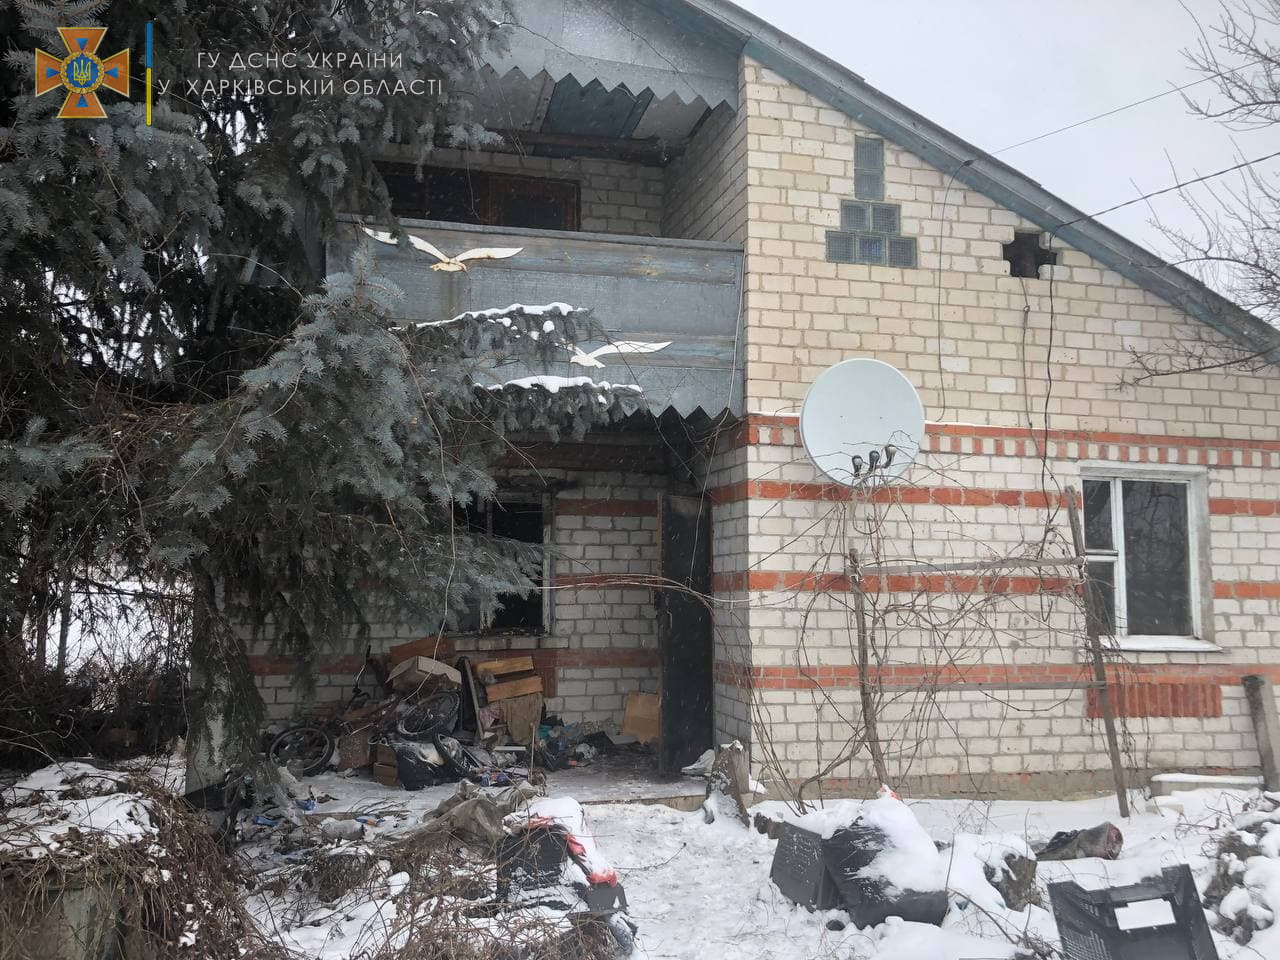 Пожар под Харьковом: В селе Новоселовка два раза горел частный дом - пострадал мужчина